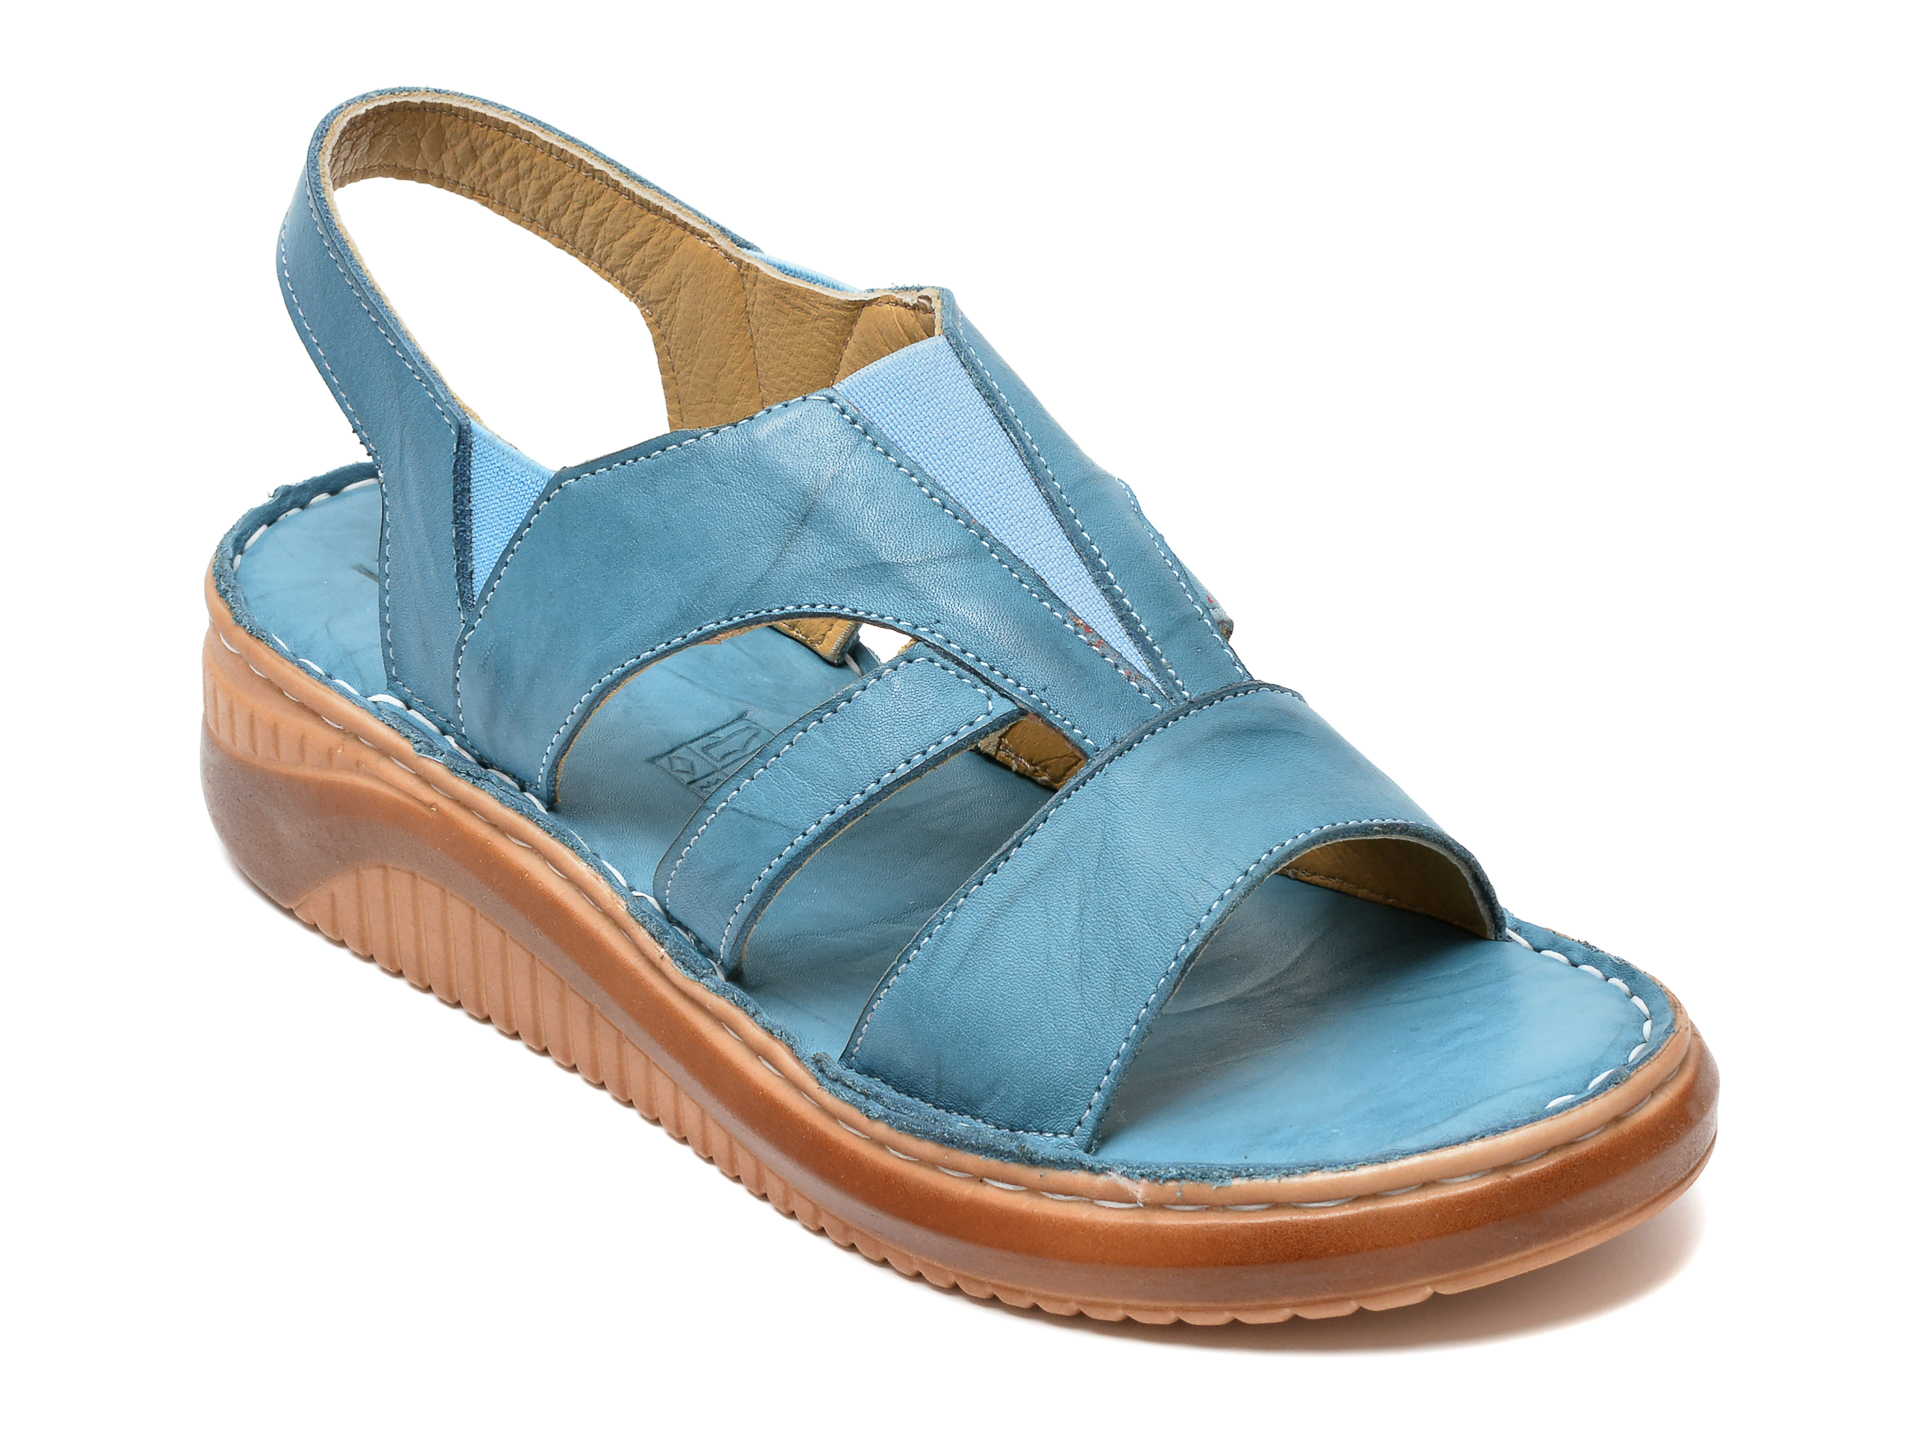 Sandale PAVARELLA albastre, 217, din piele naturala /femei/sandale